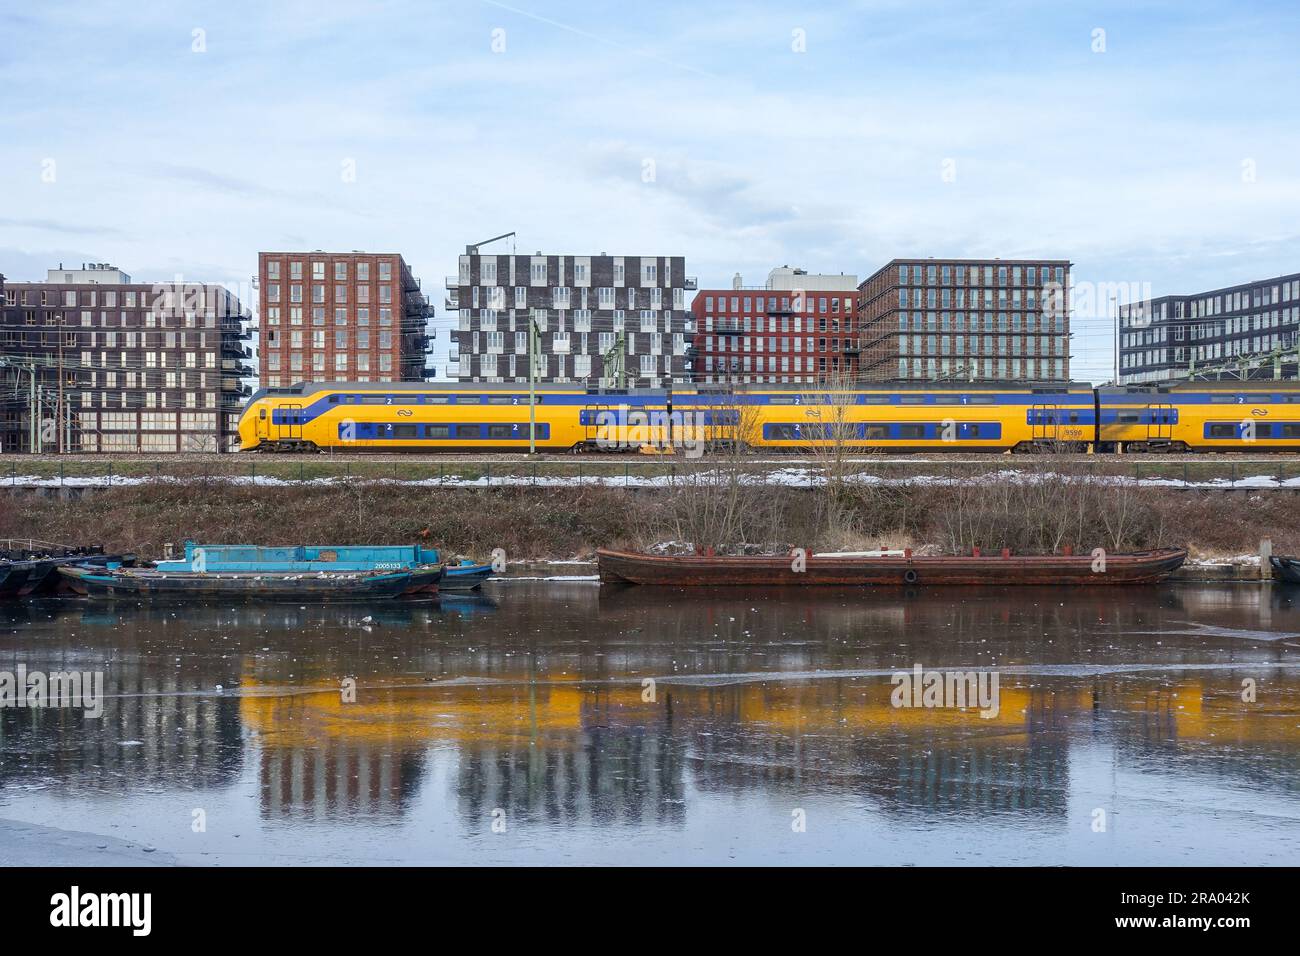 Train NS (pays-Bas) réfléchissant sur des canaux gelés à Amsterdam Banque D'Images